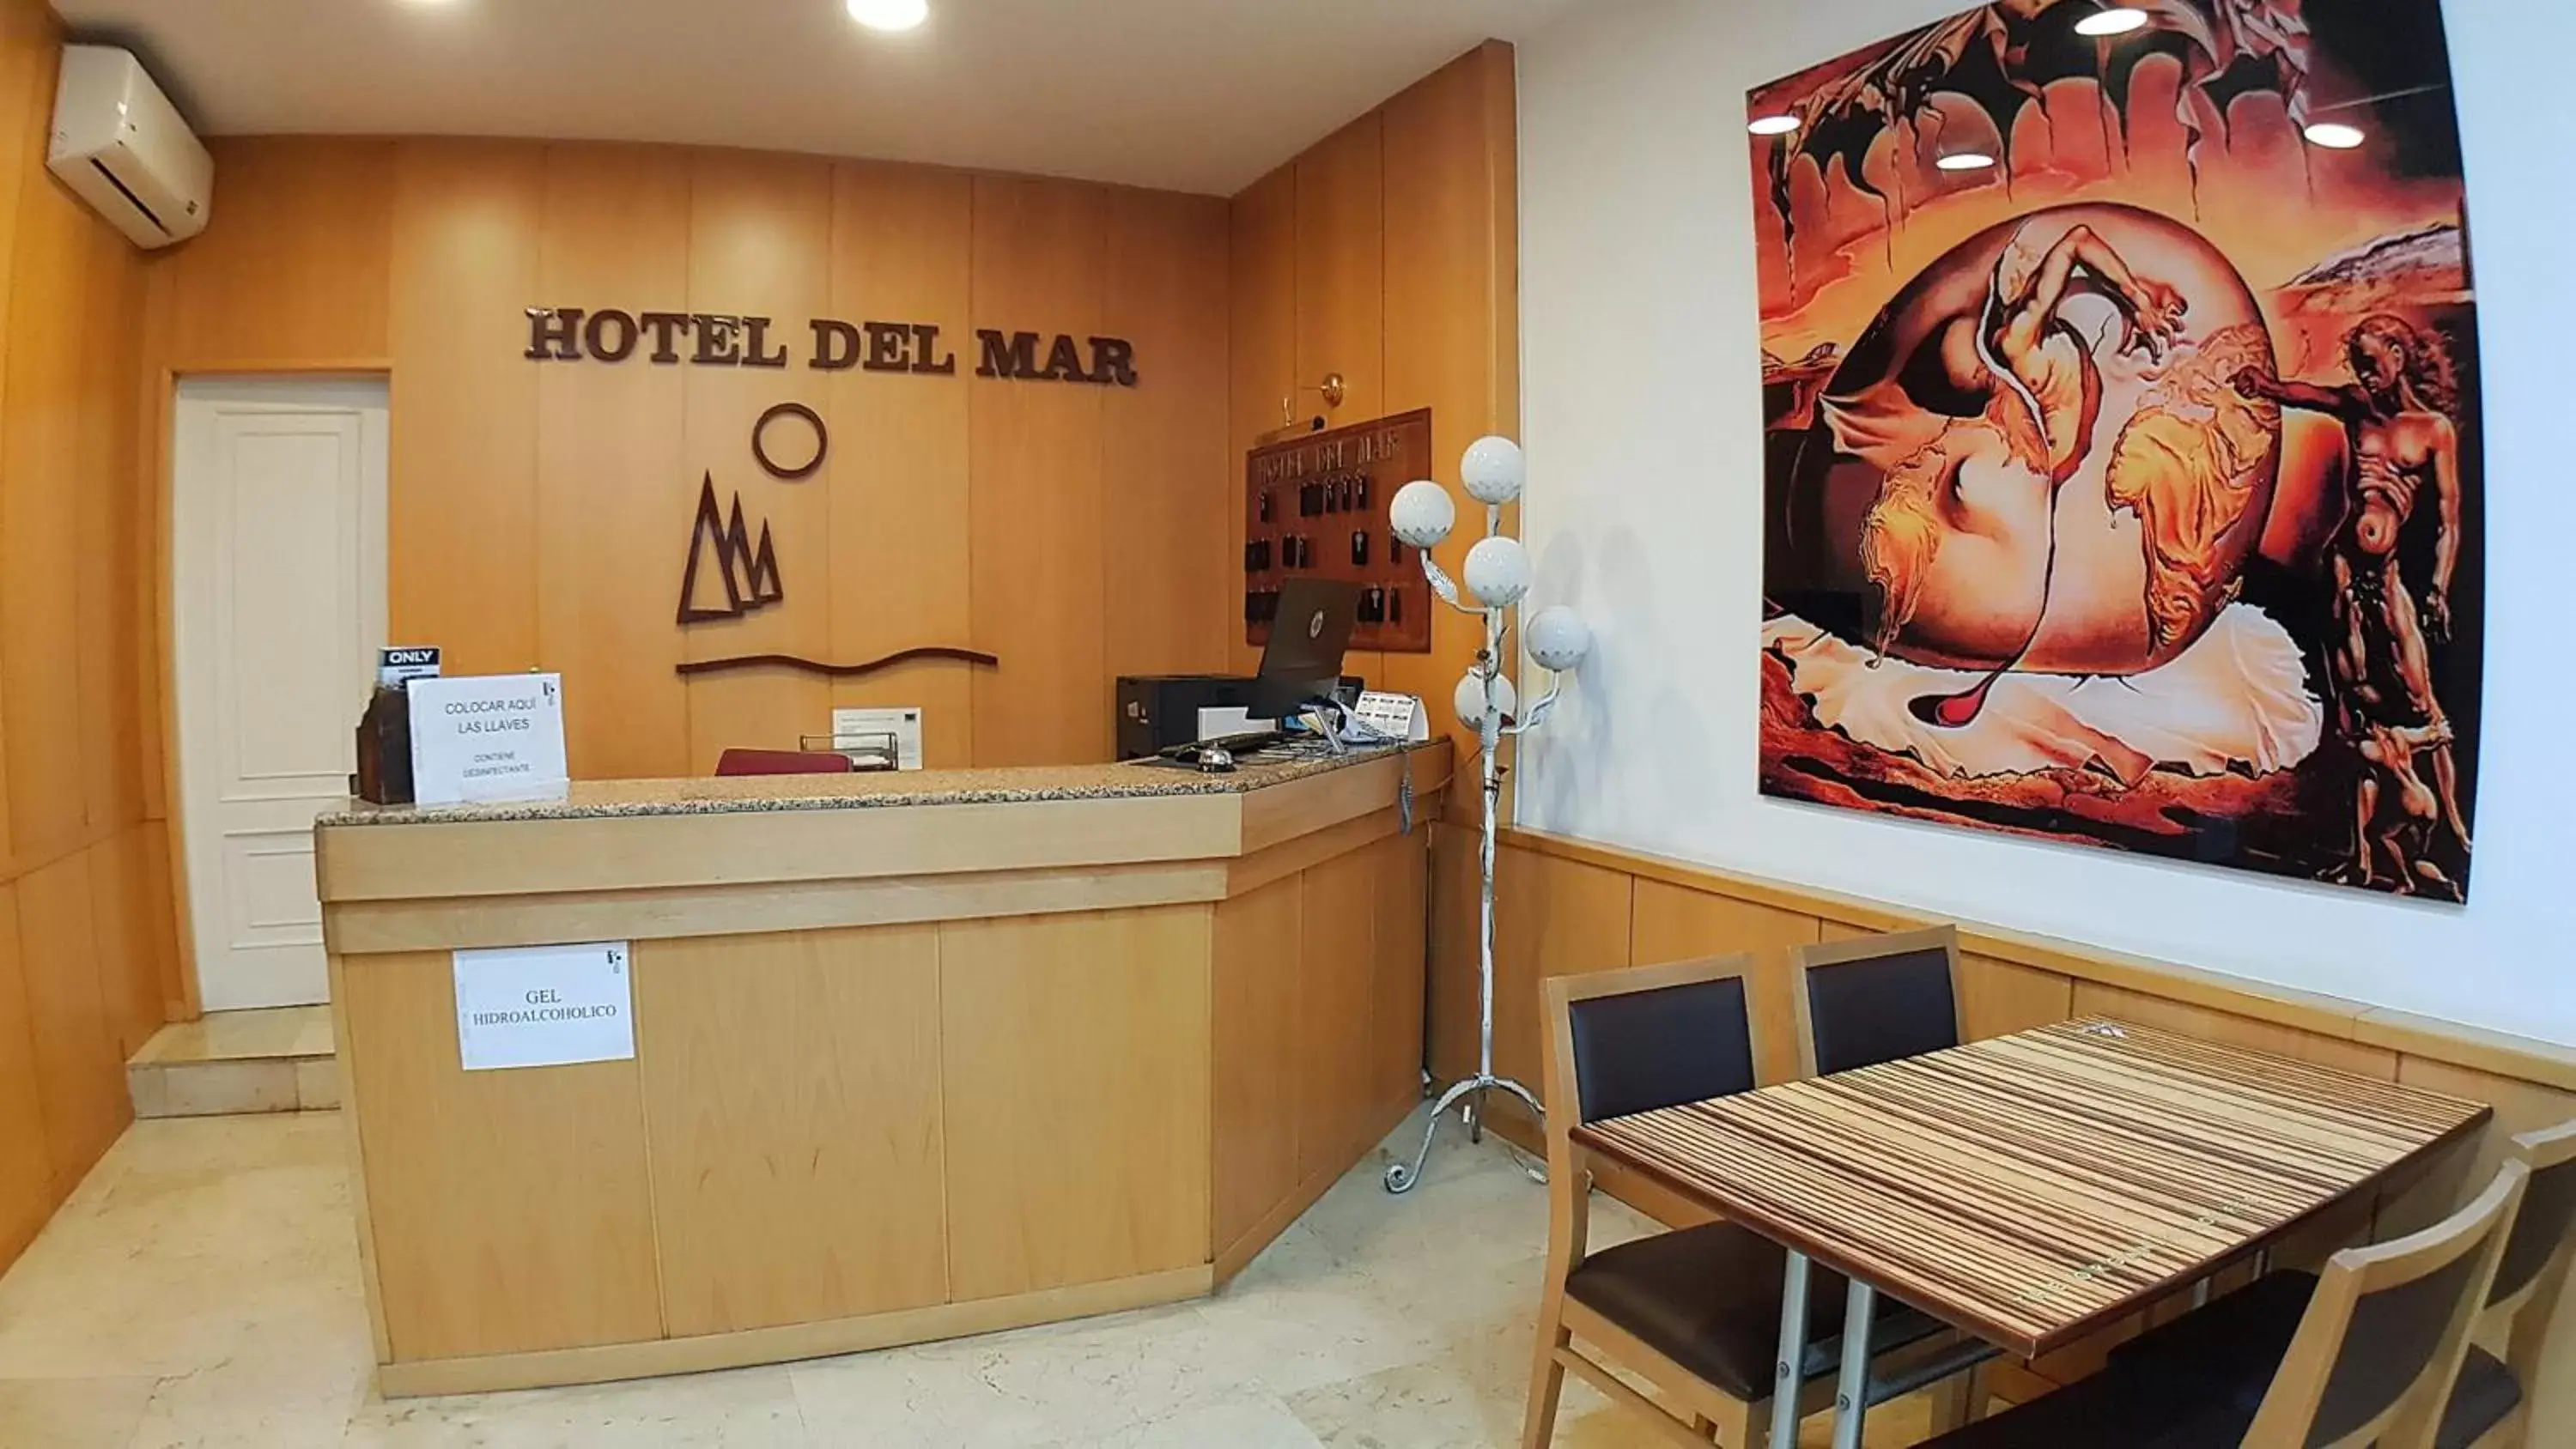 Lobby or reception in Hotel del Mar Vigo